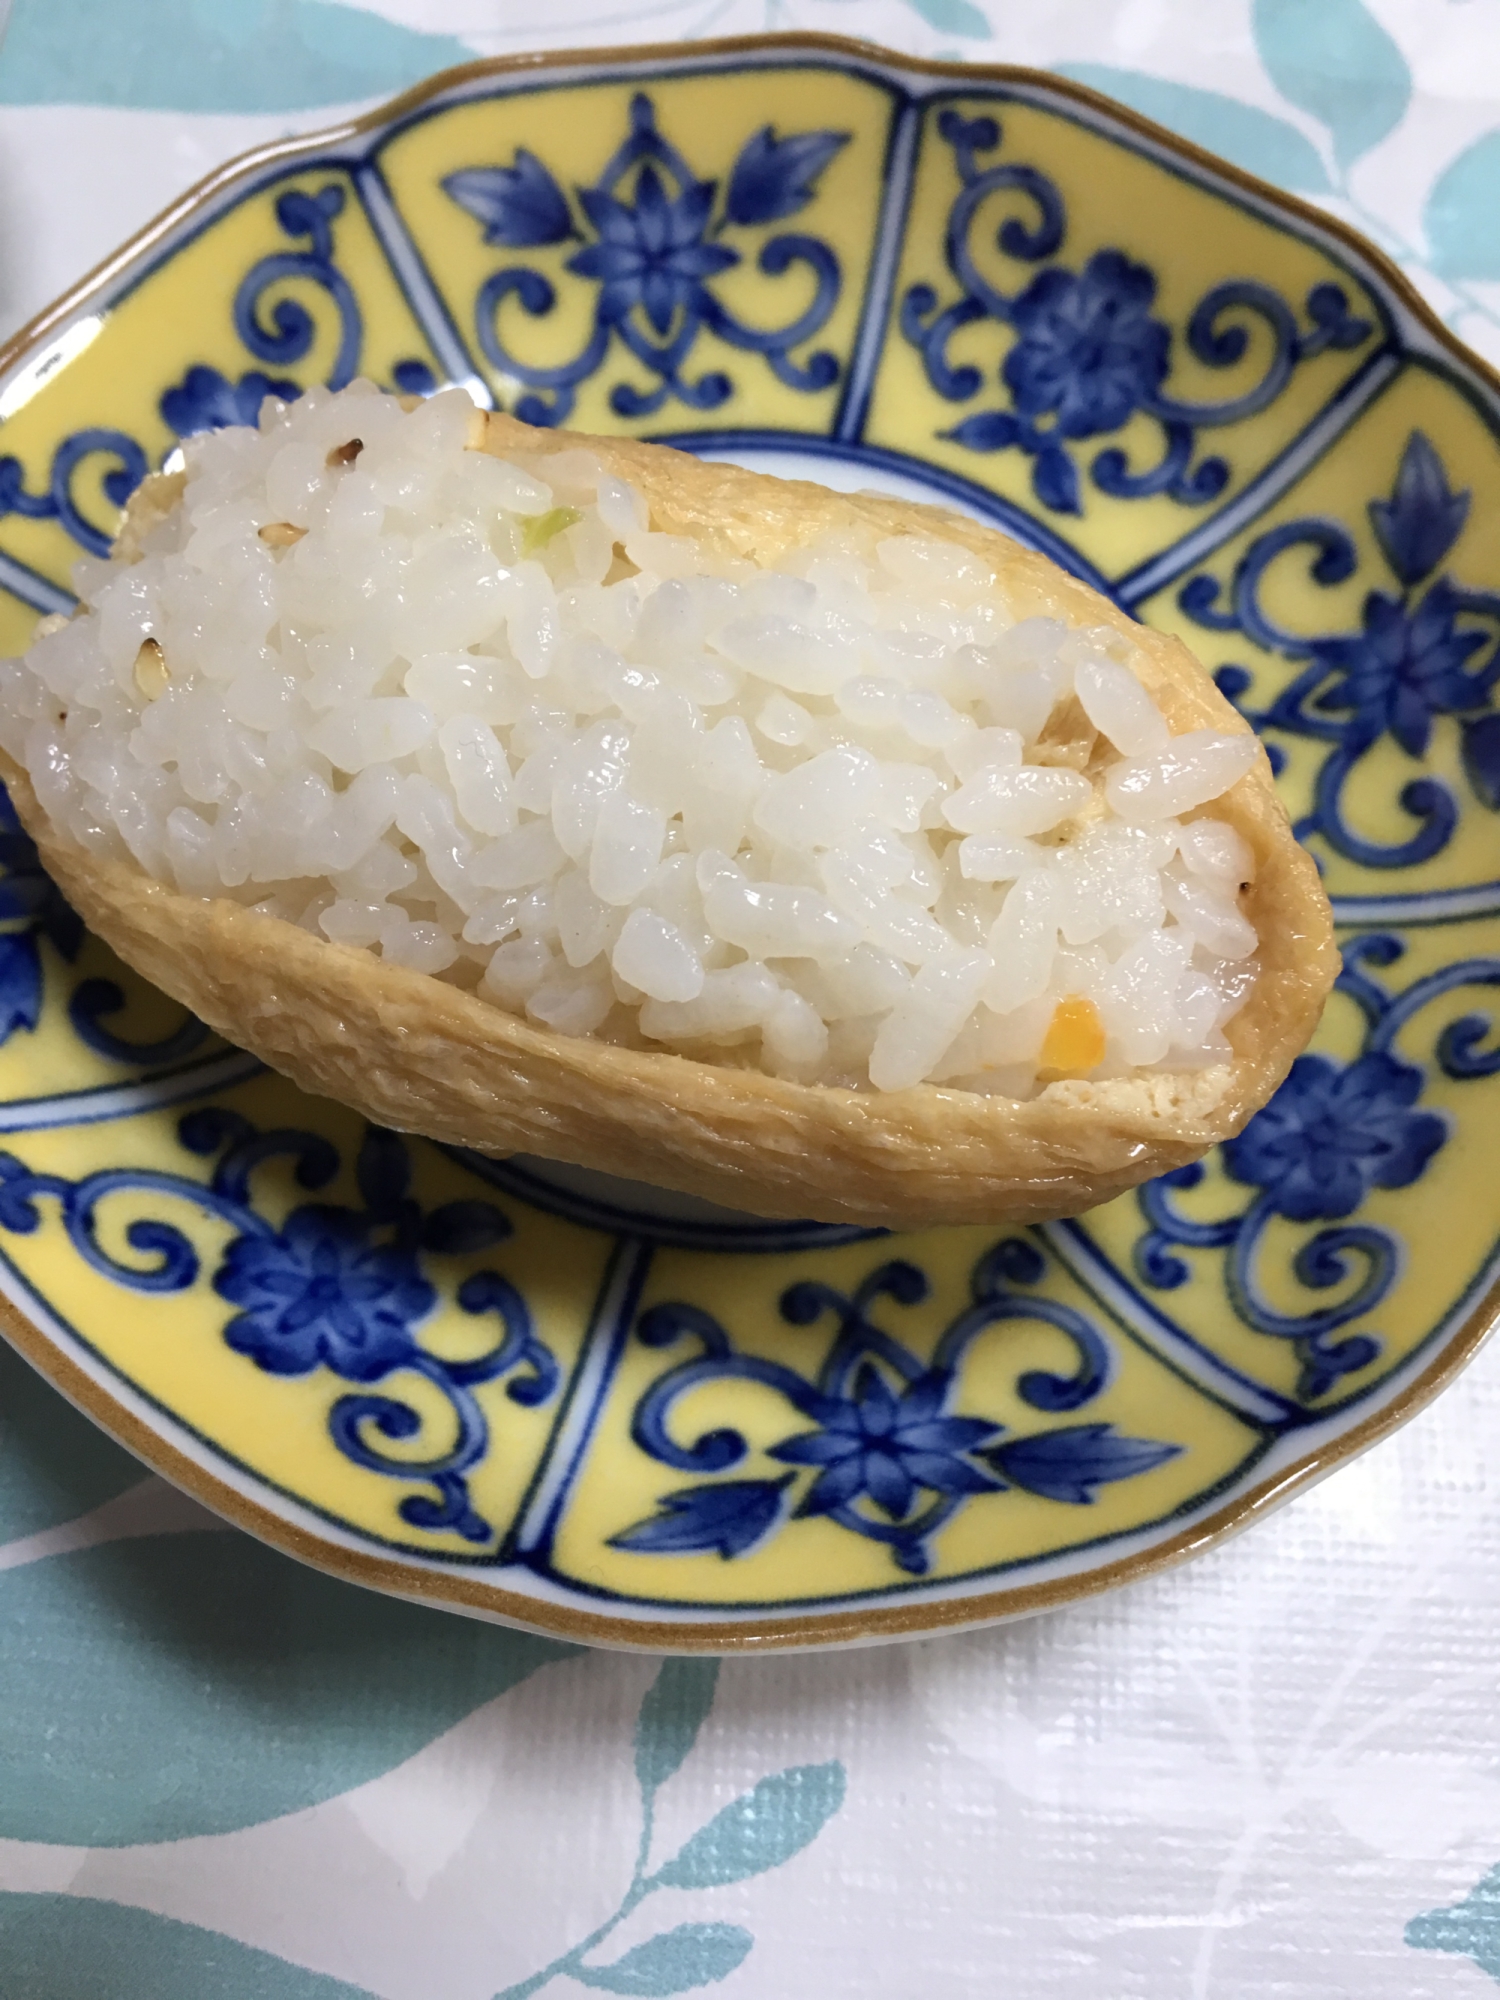 節約☆ブロッコリーの芯の稲荷寿司(*^^*)☆